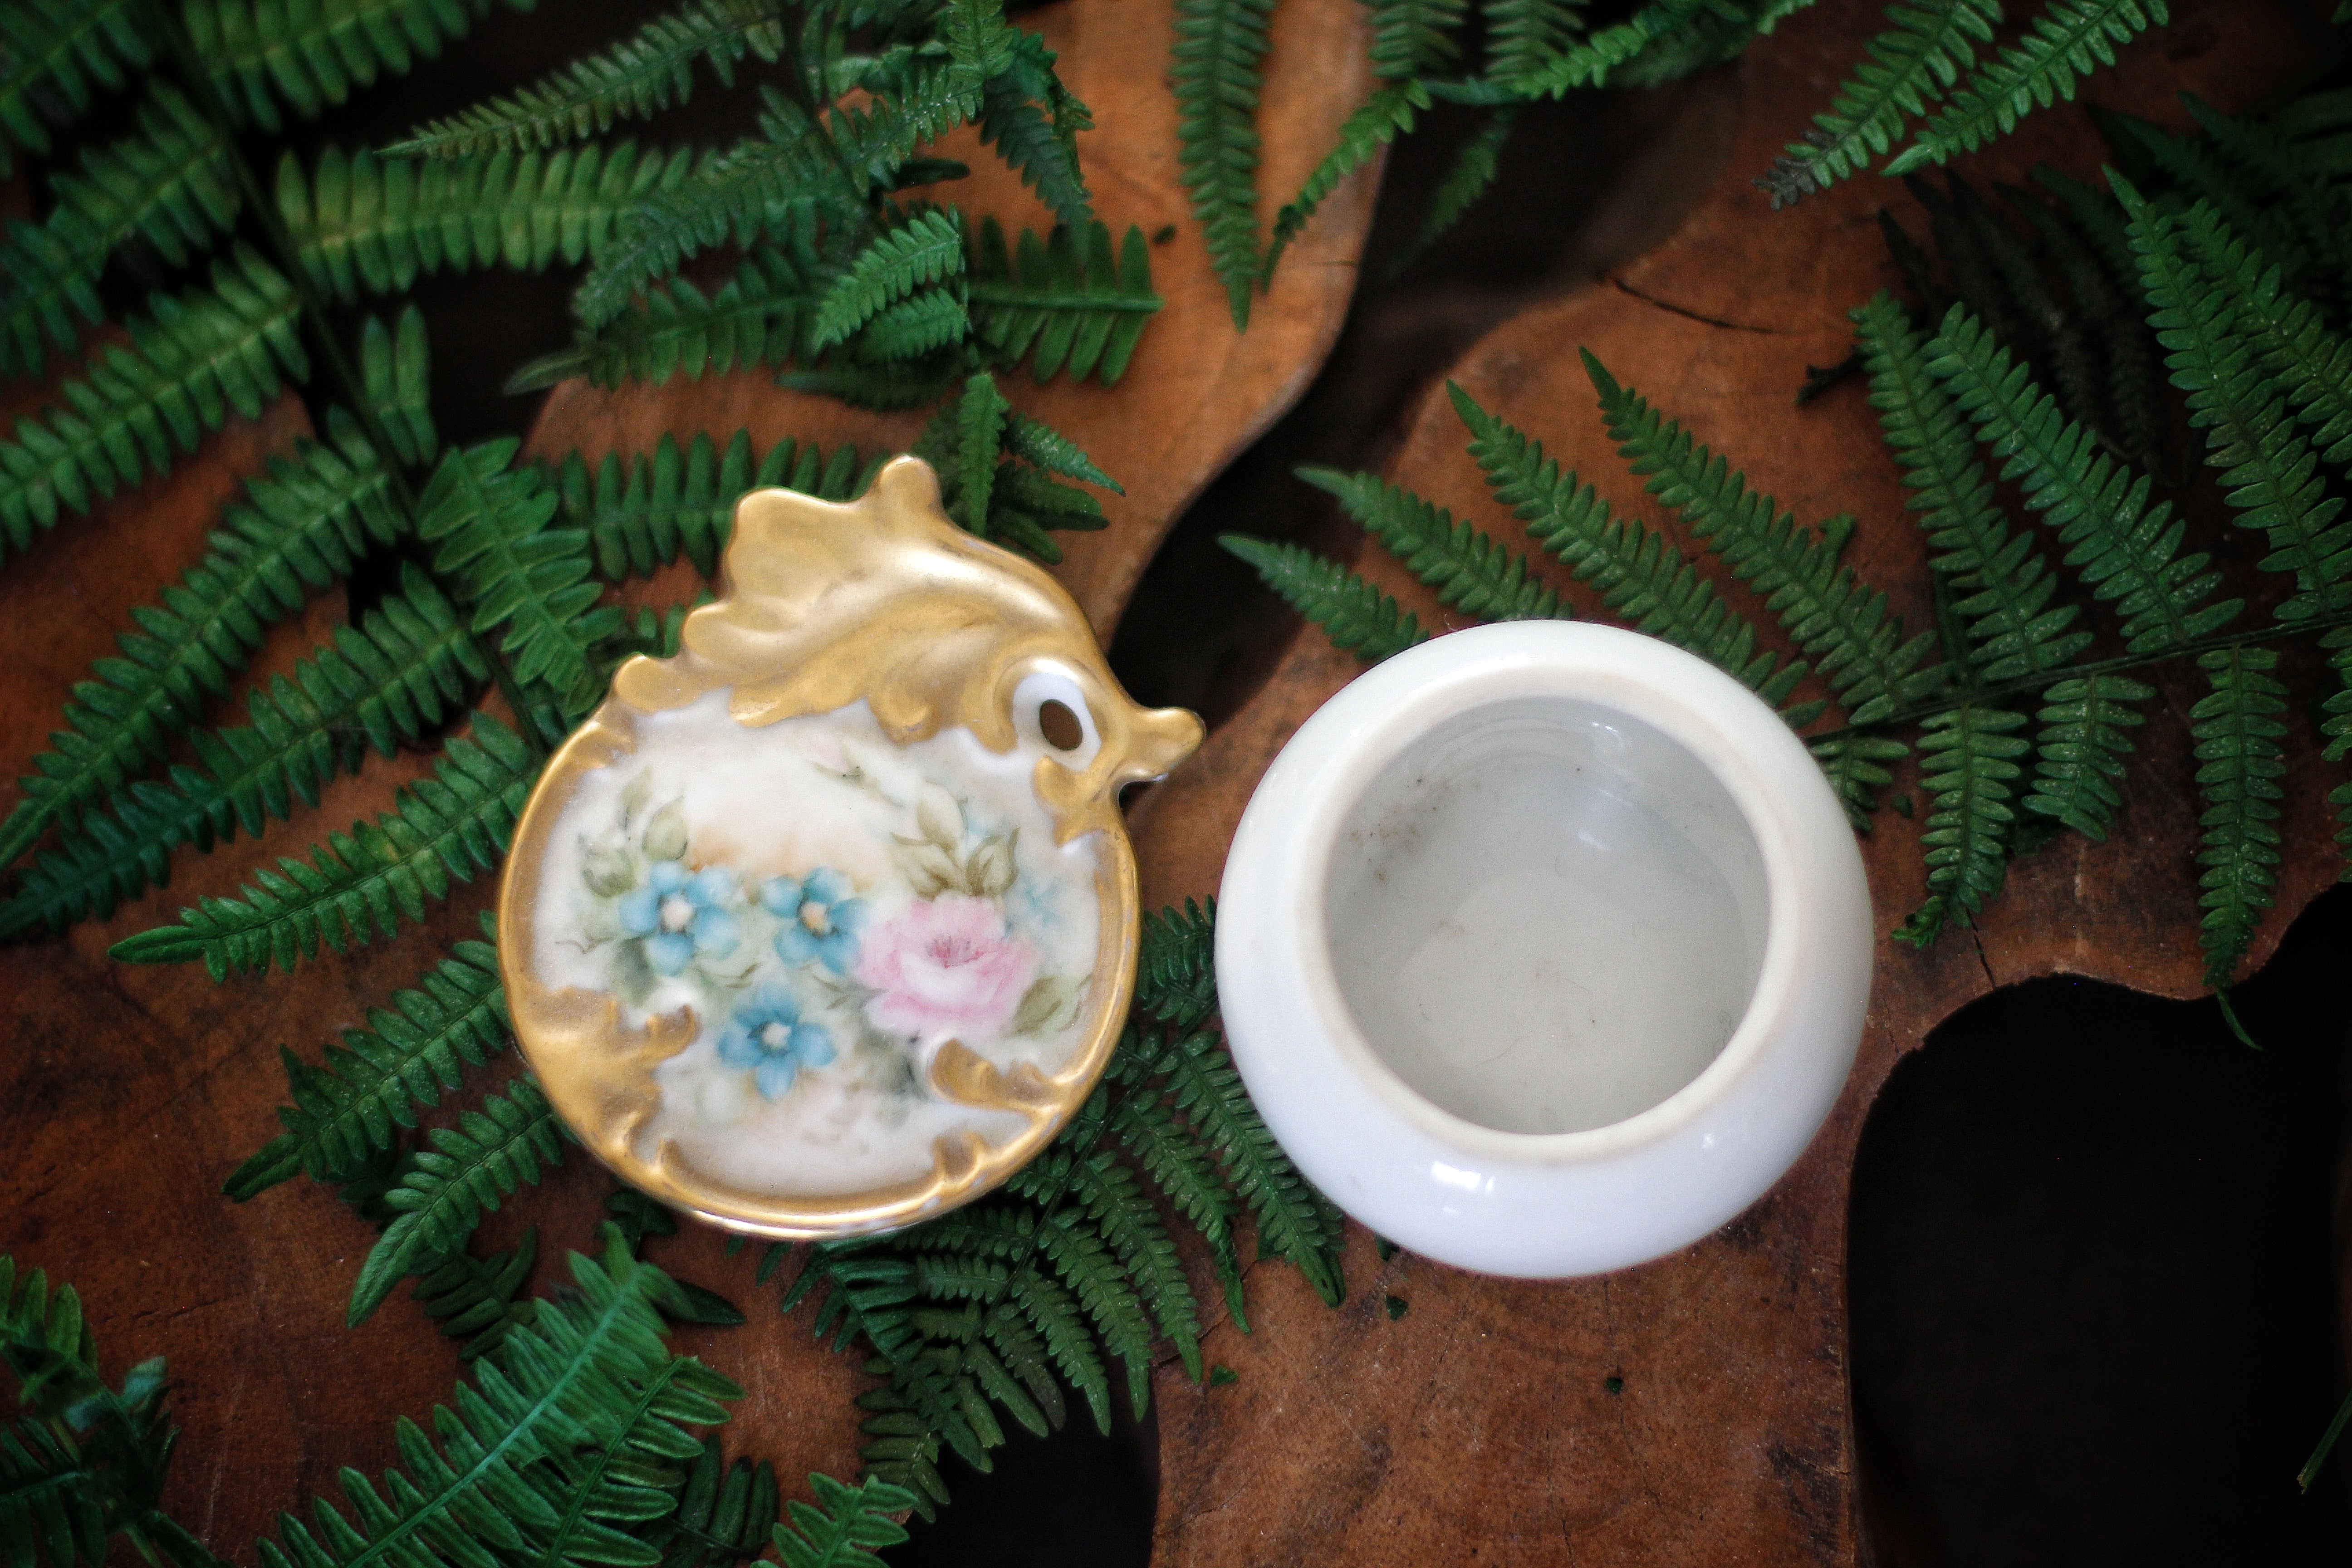 Vintage Floral Porcelain Trinket